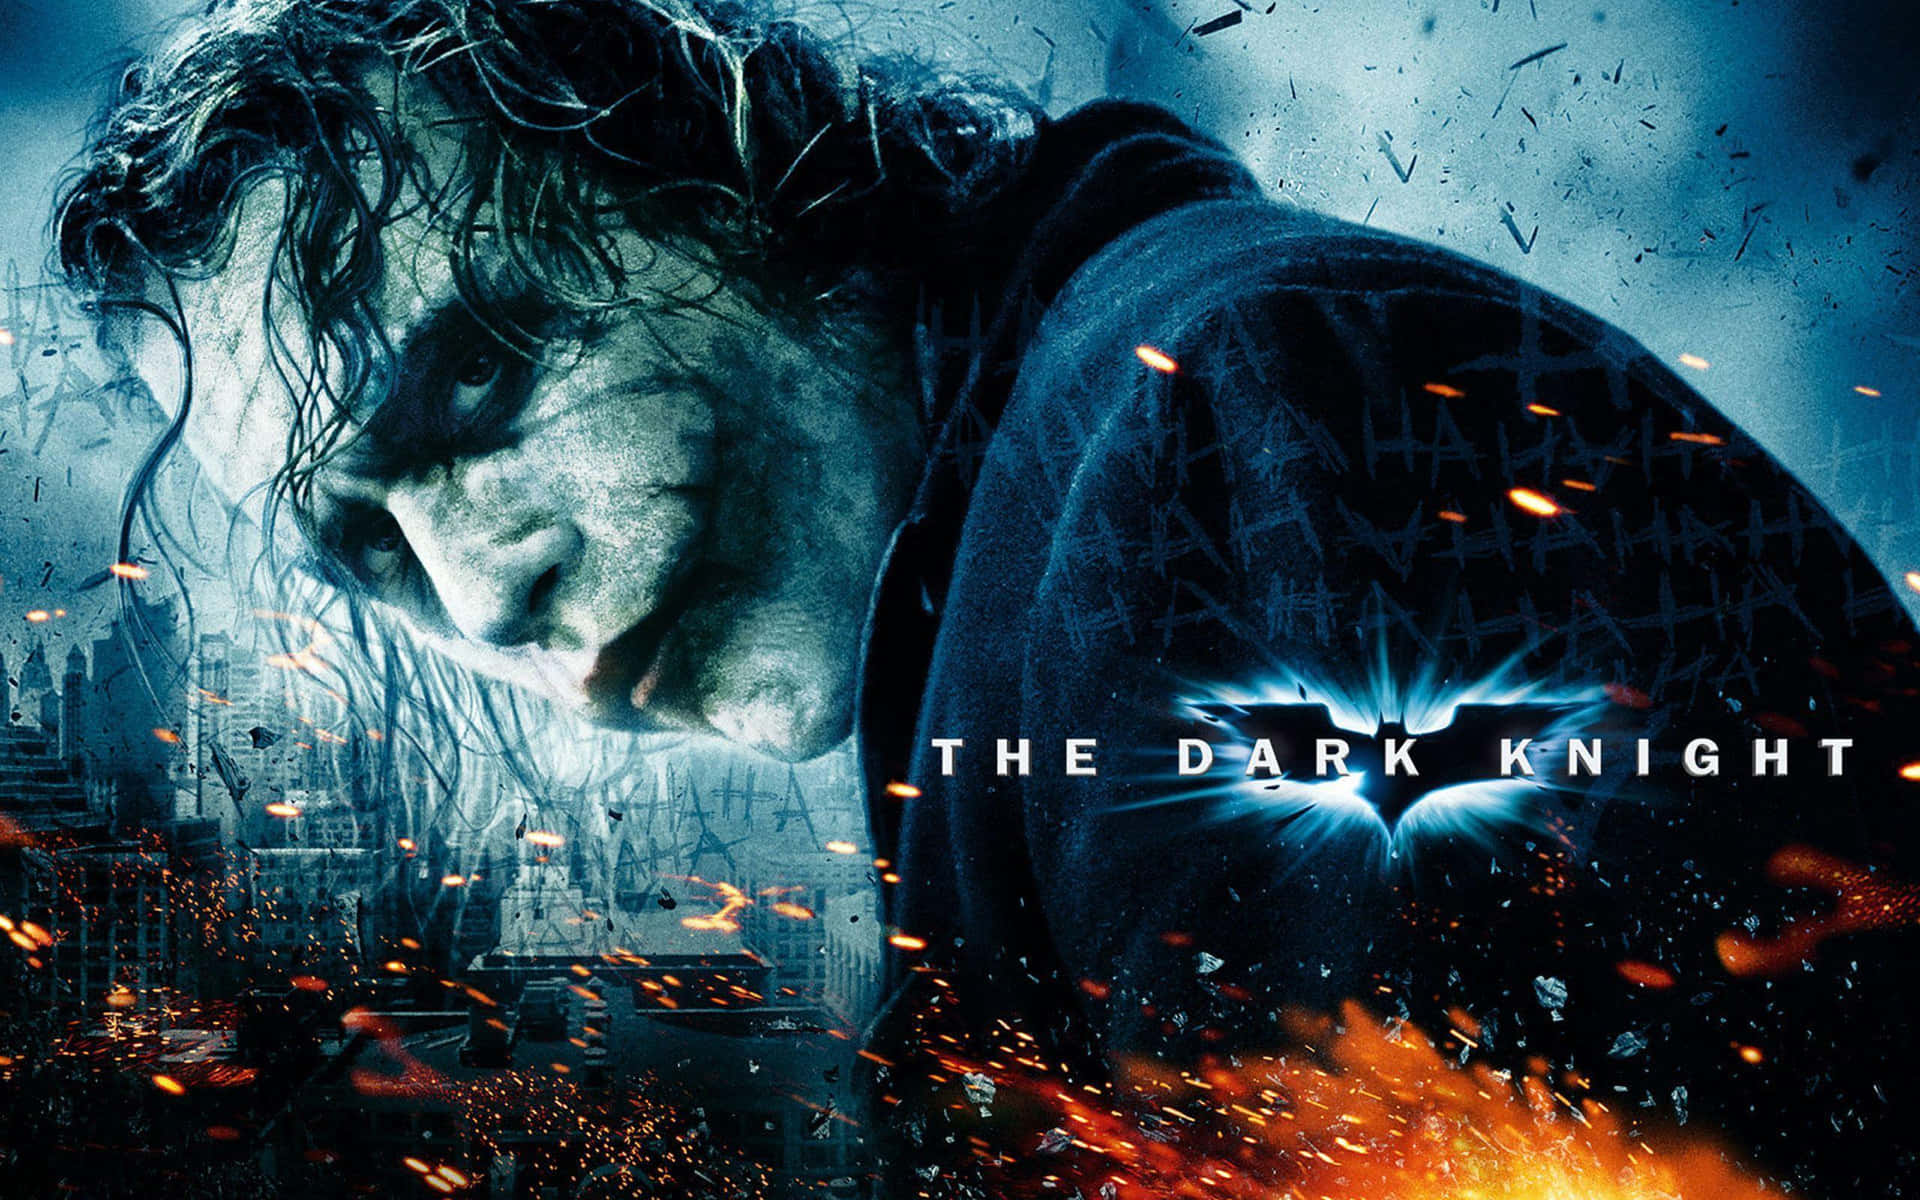 Elpóster De La Película Batman: El Caballero De La Noche Con El Joker